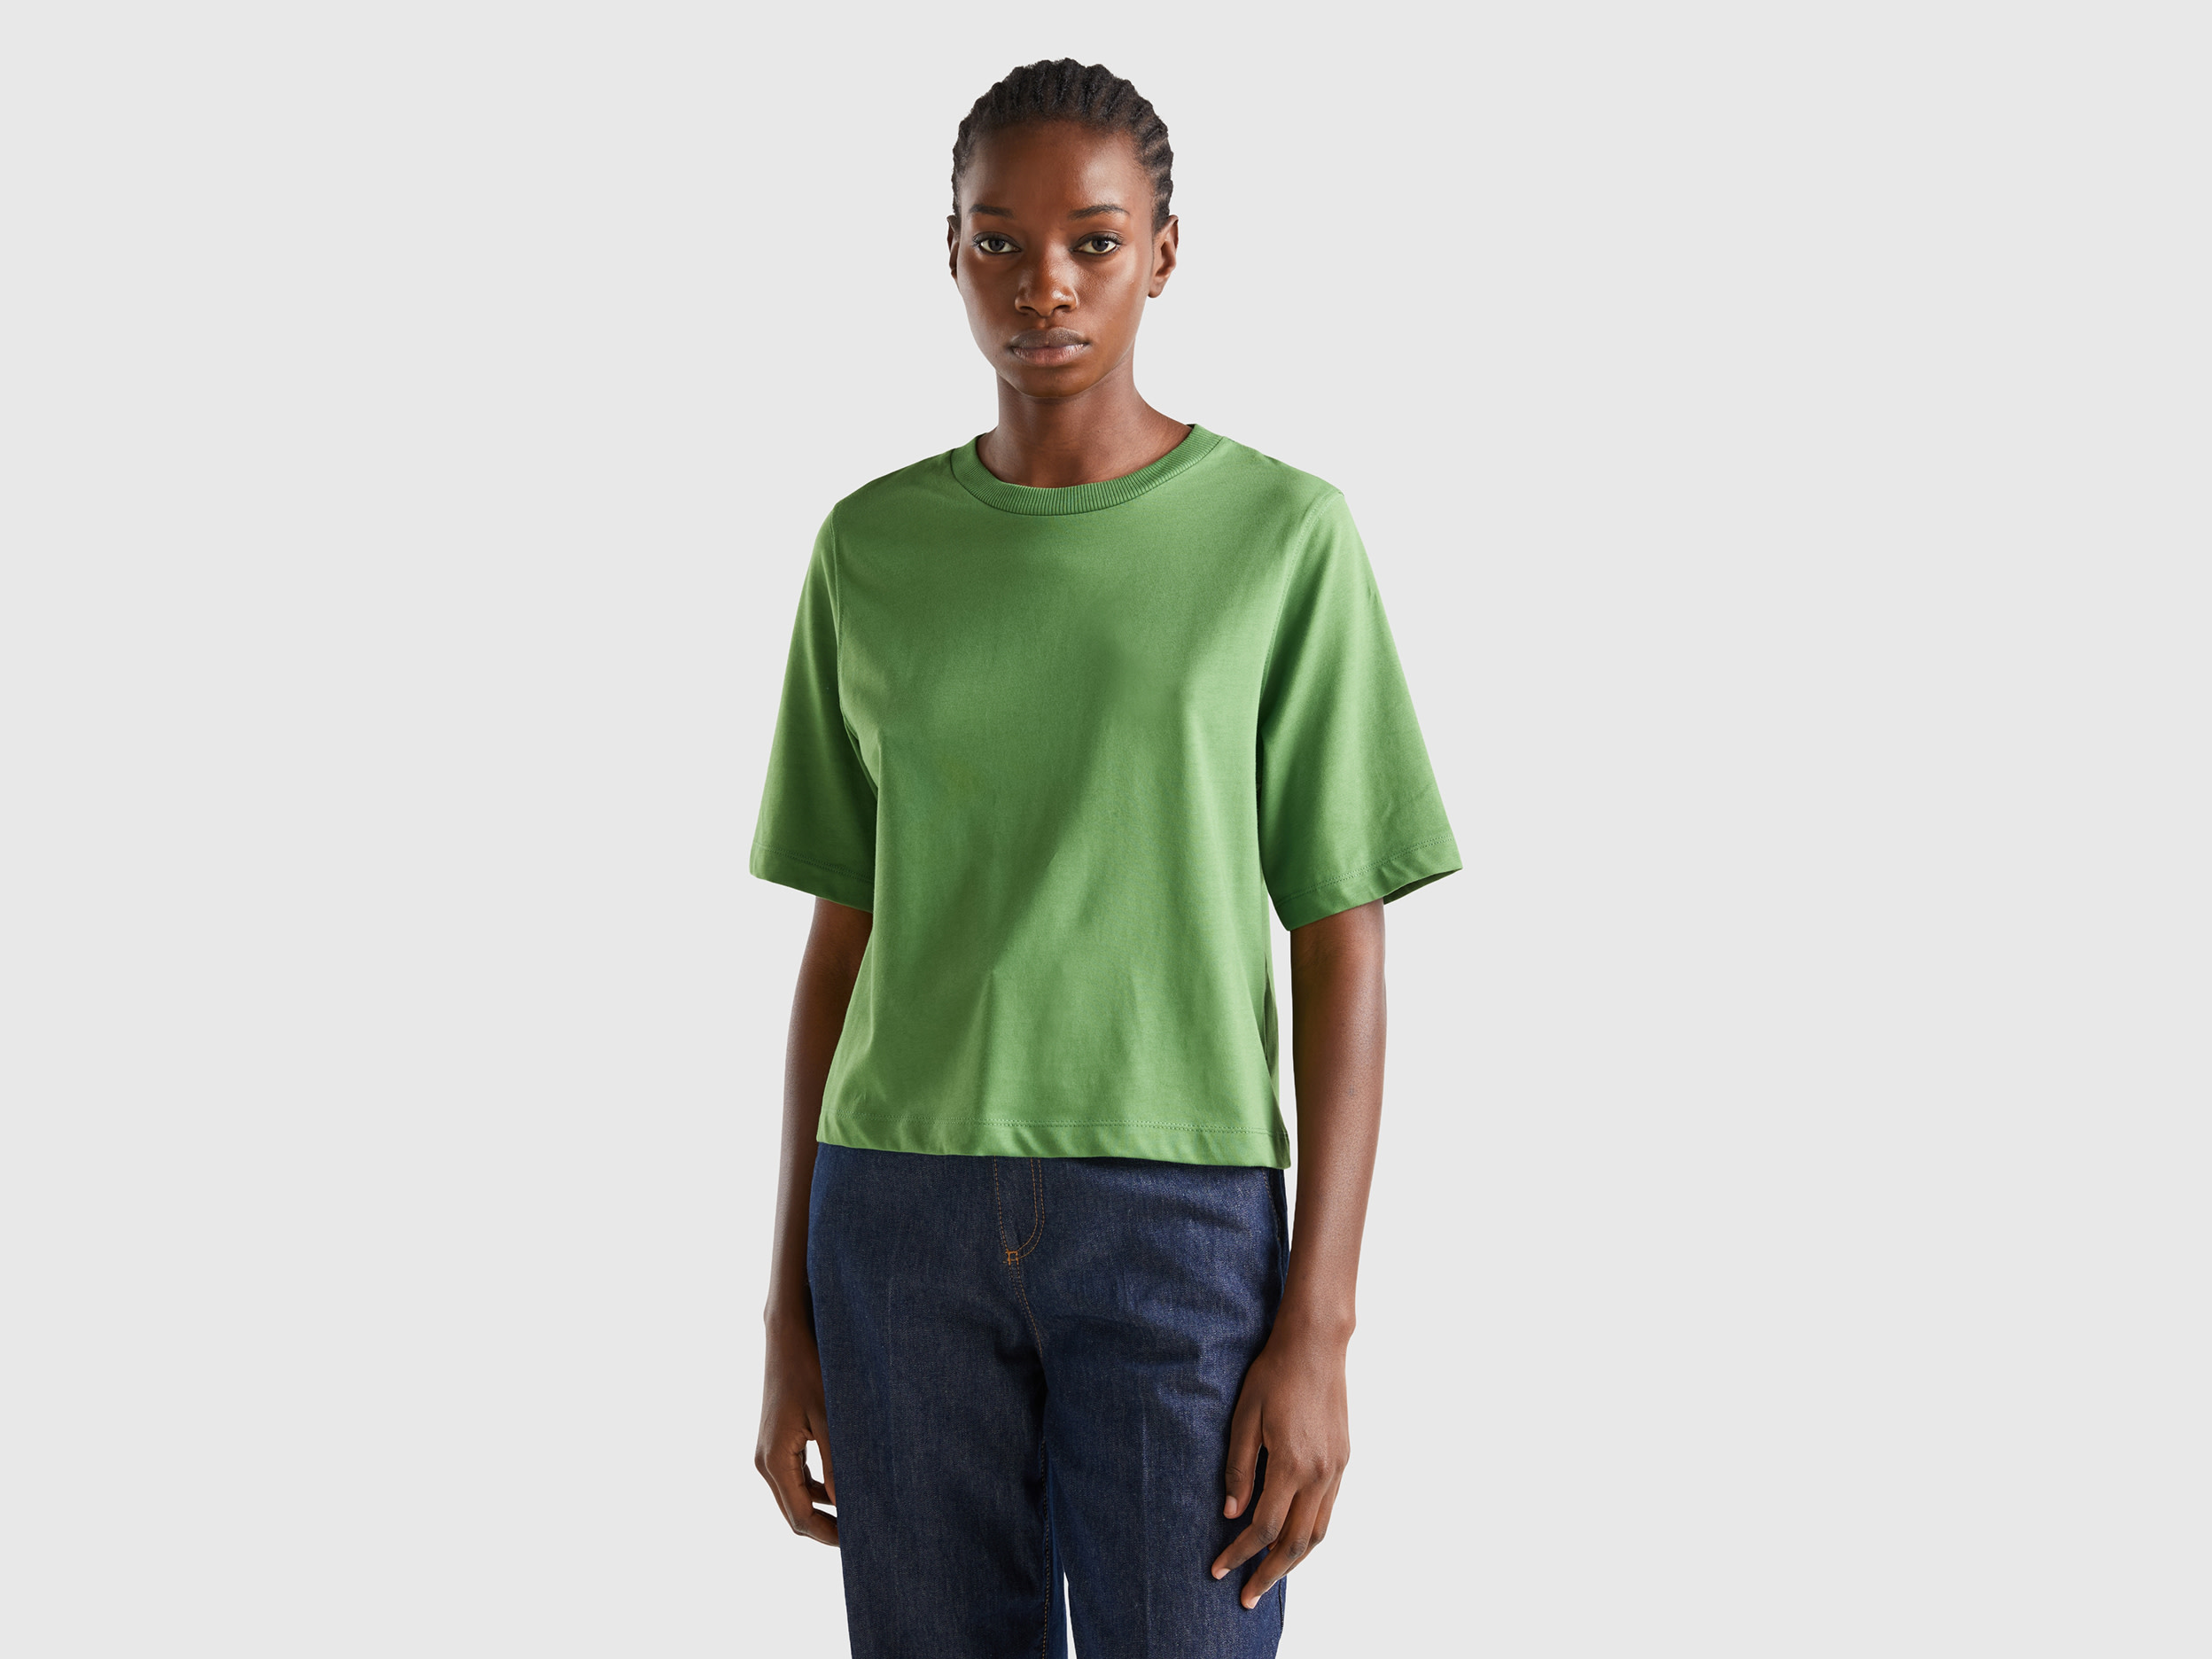 Benetton, 100% Cotton Boxy Fit T-shirt, size XXS, Military Green, Women